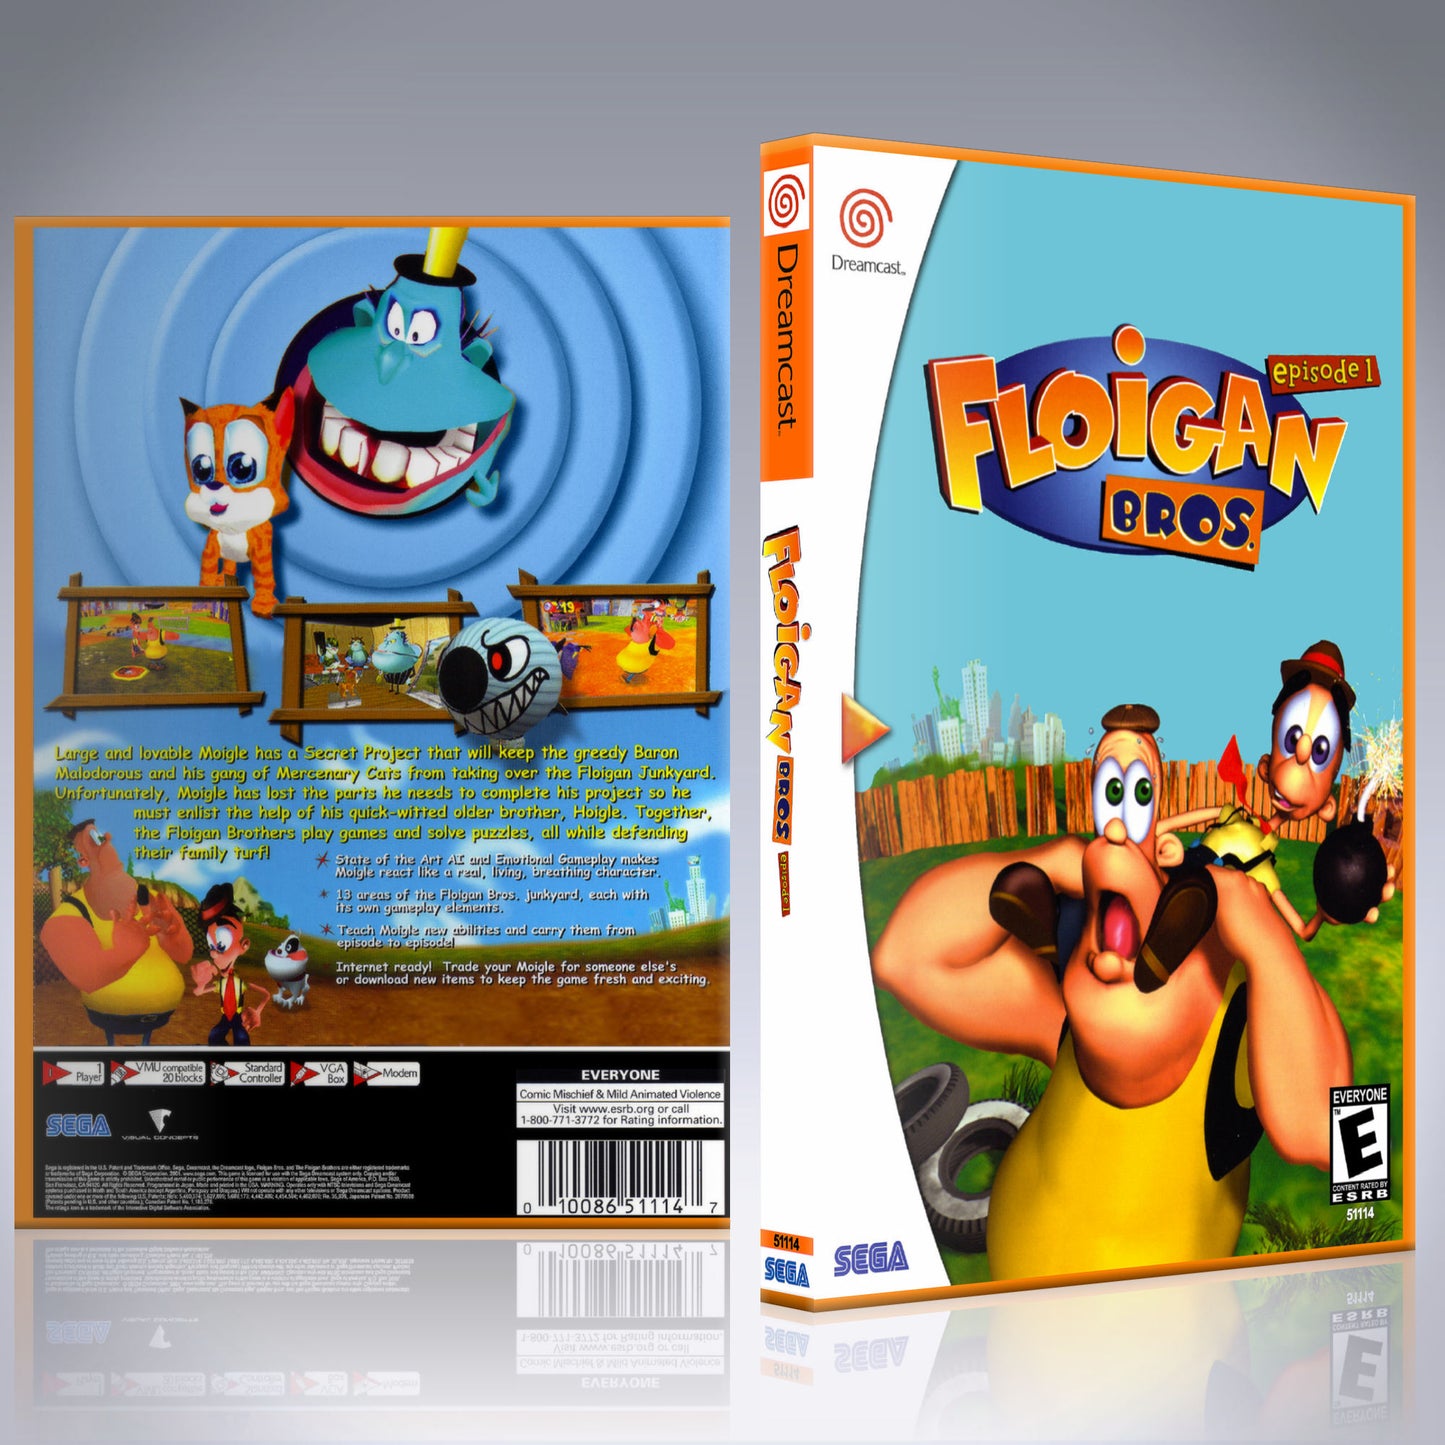 Dreamcast Custom Case - NO GAME - Floigan Bros. - Episode 1